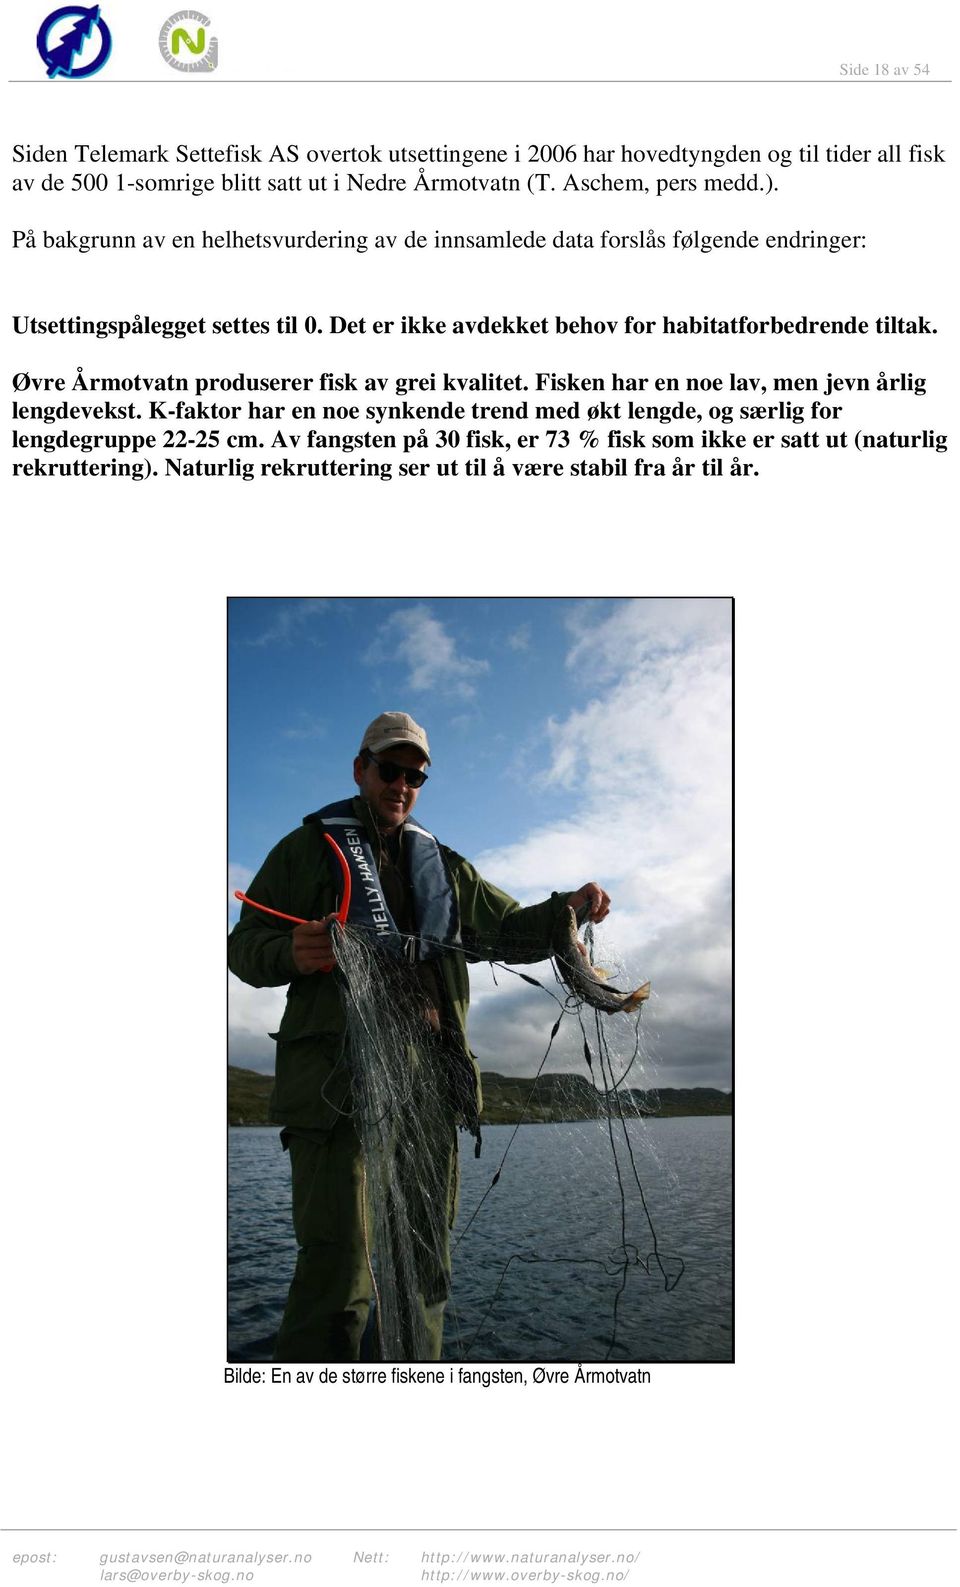 Øvre Årmotvatn produserer fisk av grei kvalitet. Fisken har en noe lav, men jevn årlig lengdevekst. K-faktor har en noe synkende trend med økt lengde, og særlig for lengdegruppe 22-25 cm.